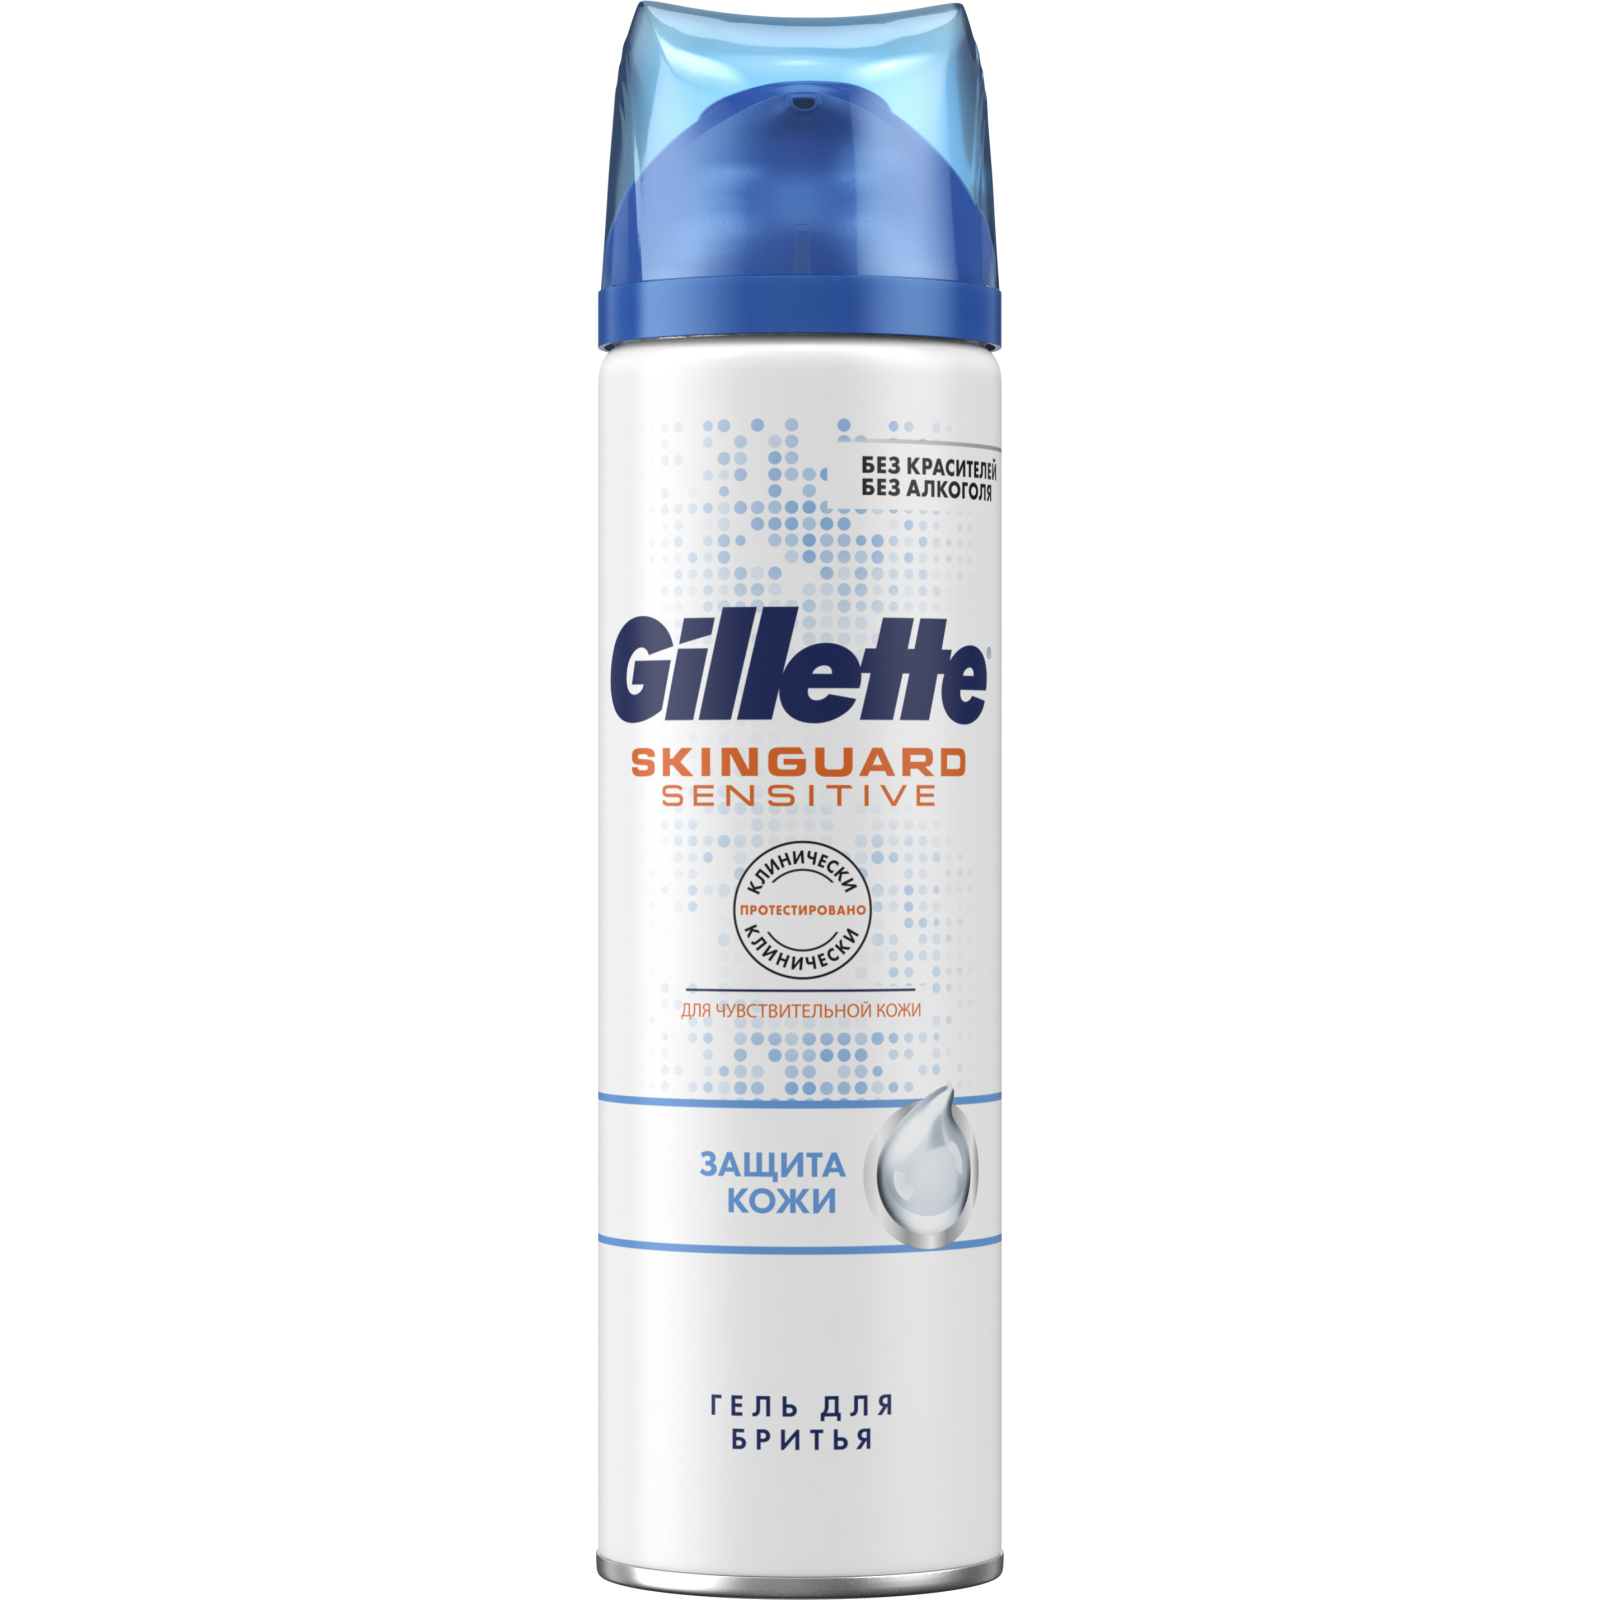 Гель для бритья Gillette Skinguard Sensitive с экстрактом алоэ Защита кожи 200 мл (7702018493920)